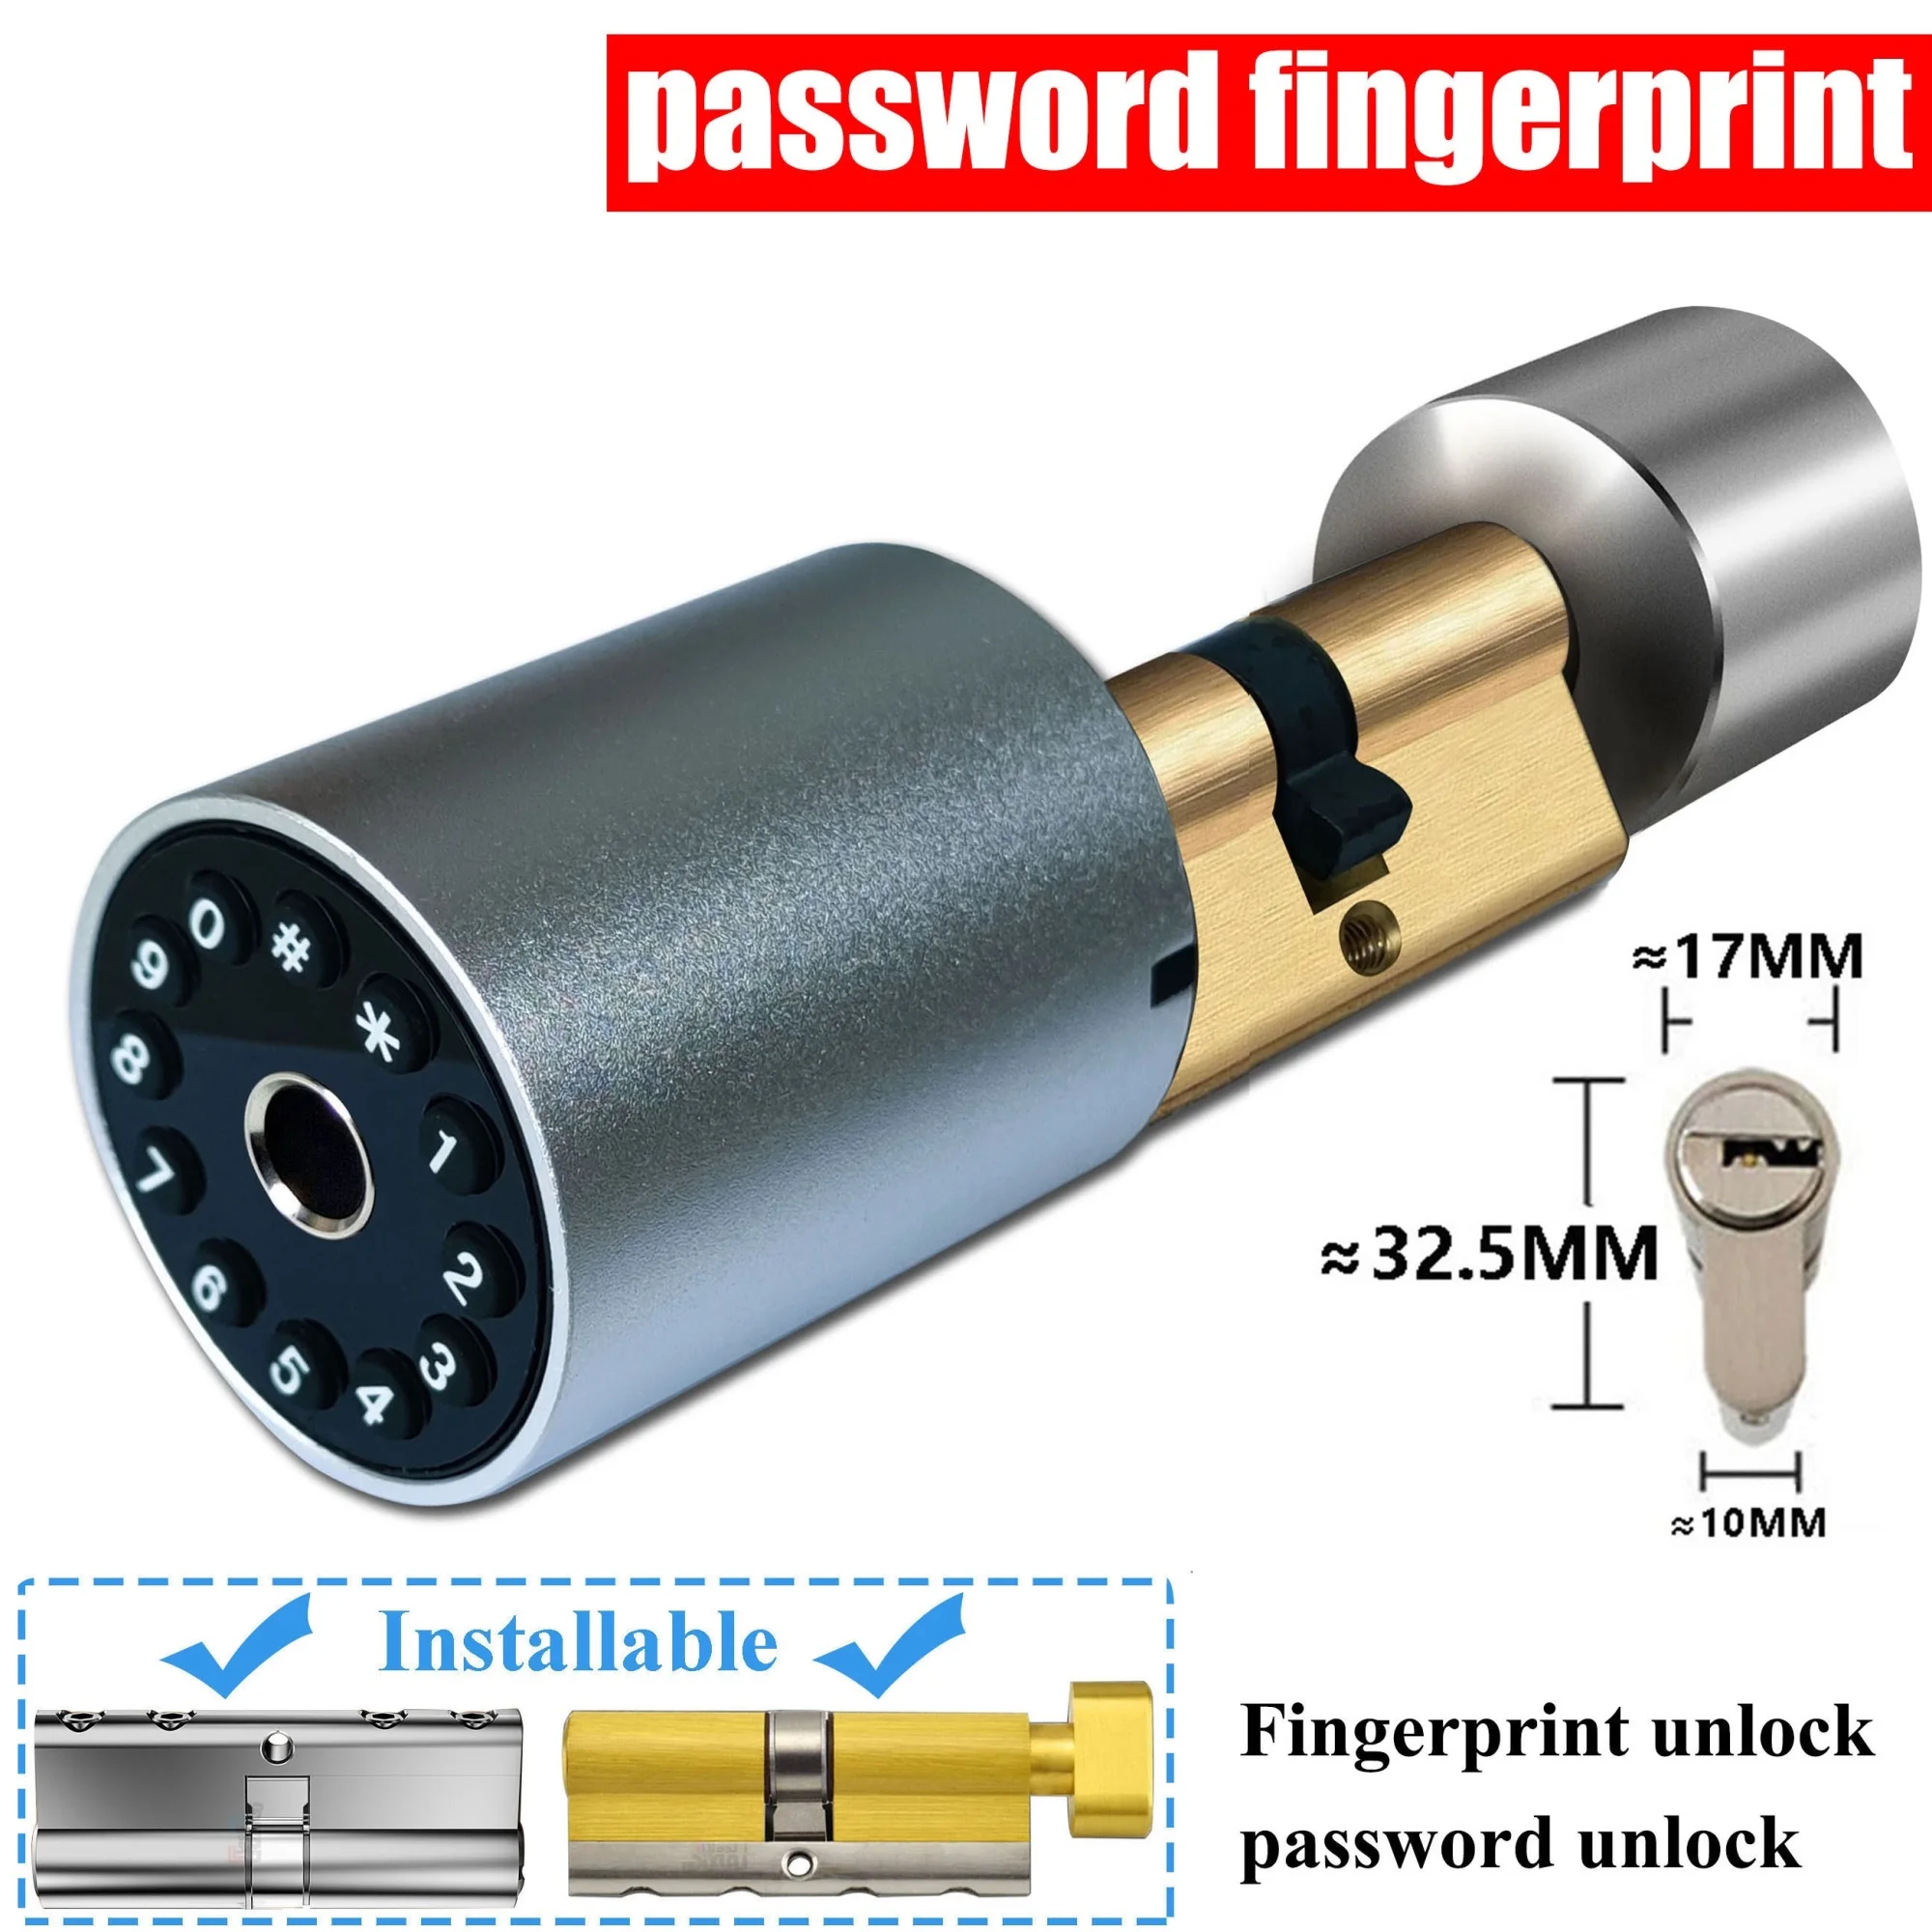 

Замок дверной электронный со сканером отпечатков пальцев, умный уличный замок с паролем, регулируемый размер, цилиндрический, управление через приложение